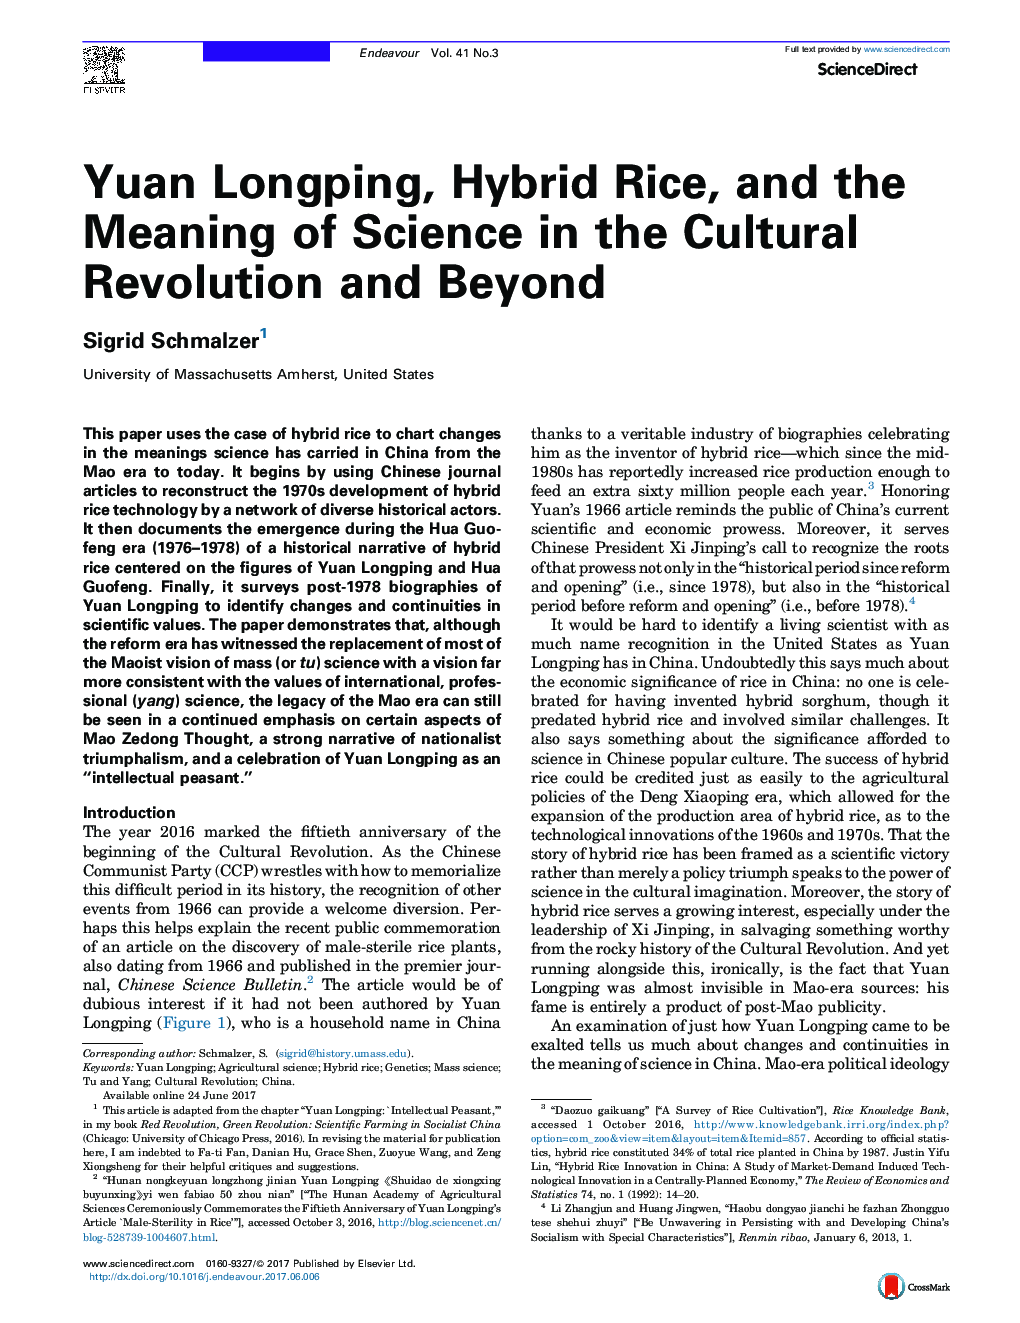 یوان Longping، برنج ترکیبی و معنای علم در انقلاب فرهنگی و فراتر از آن